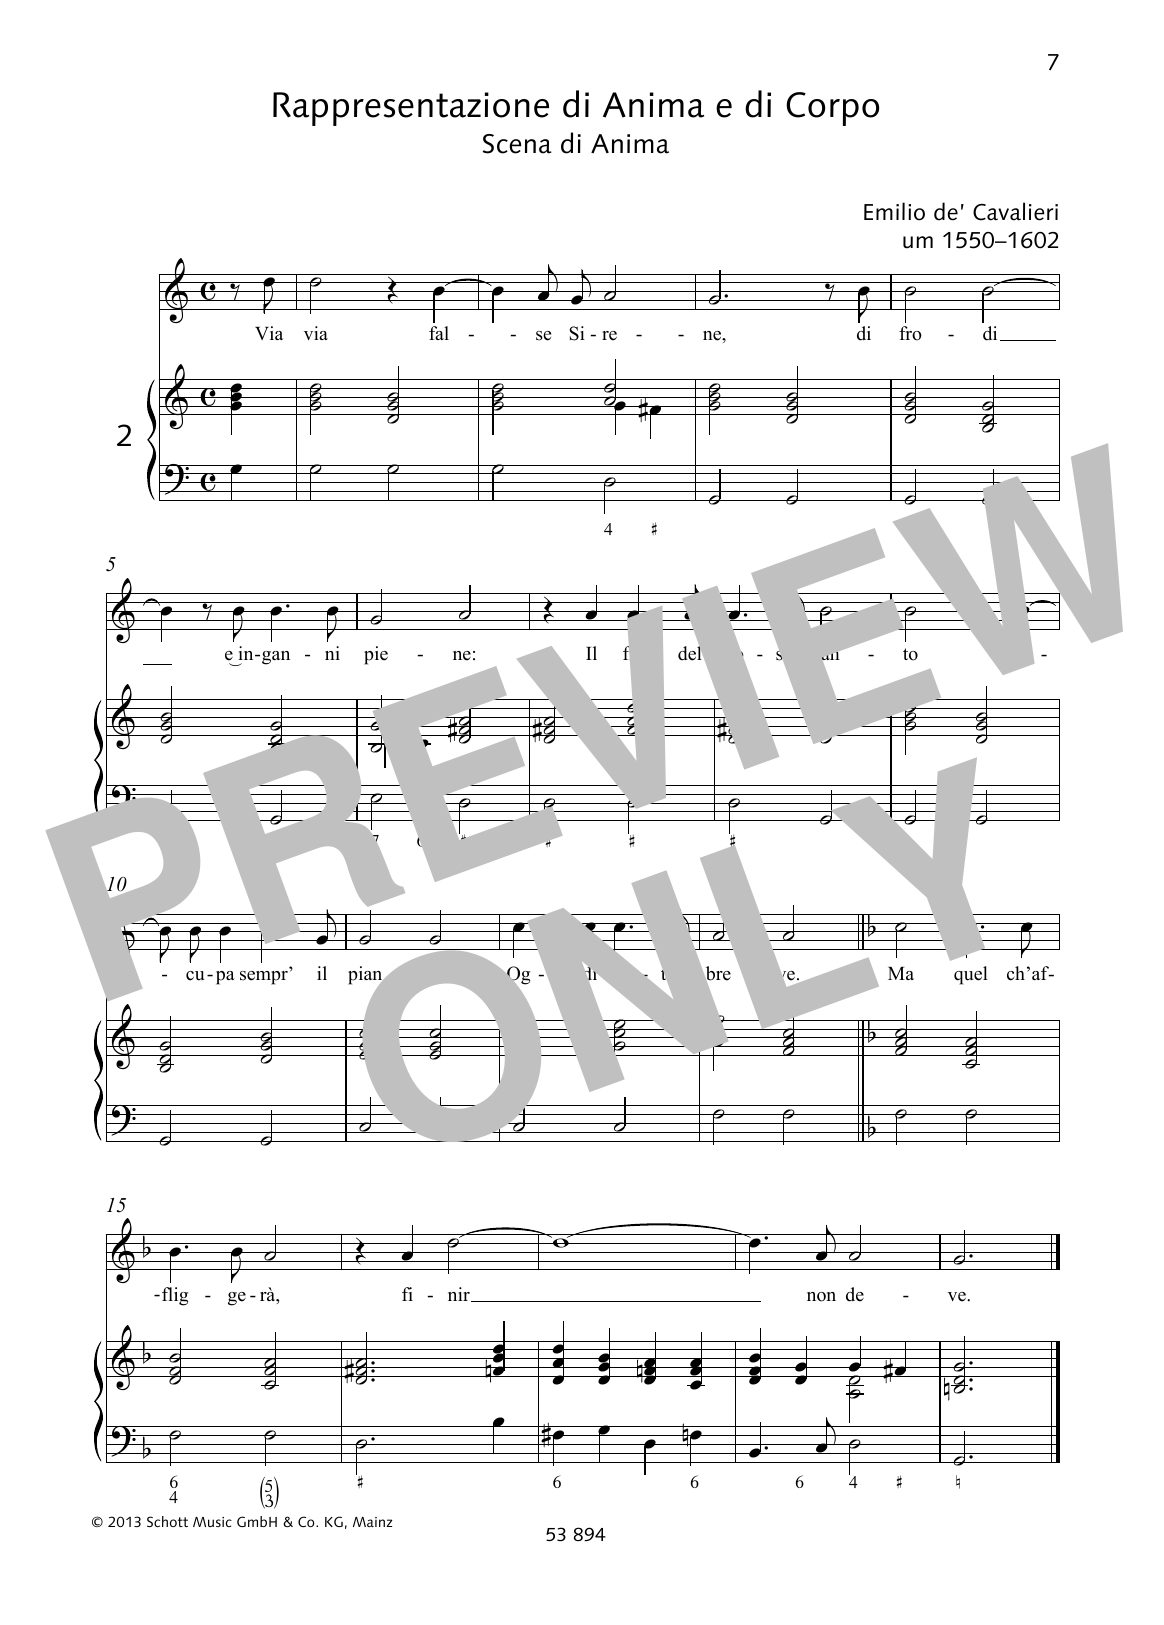 Emilio de Cavalieri Via via false Sirene Sheet Music Notes & Chords for Piano & Vocal - Download or Print PDF